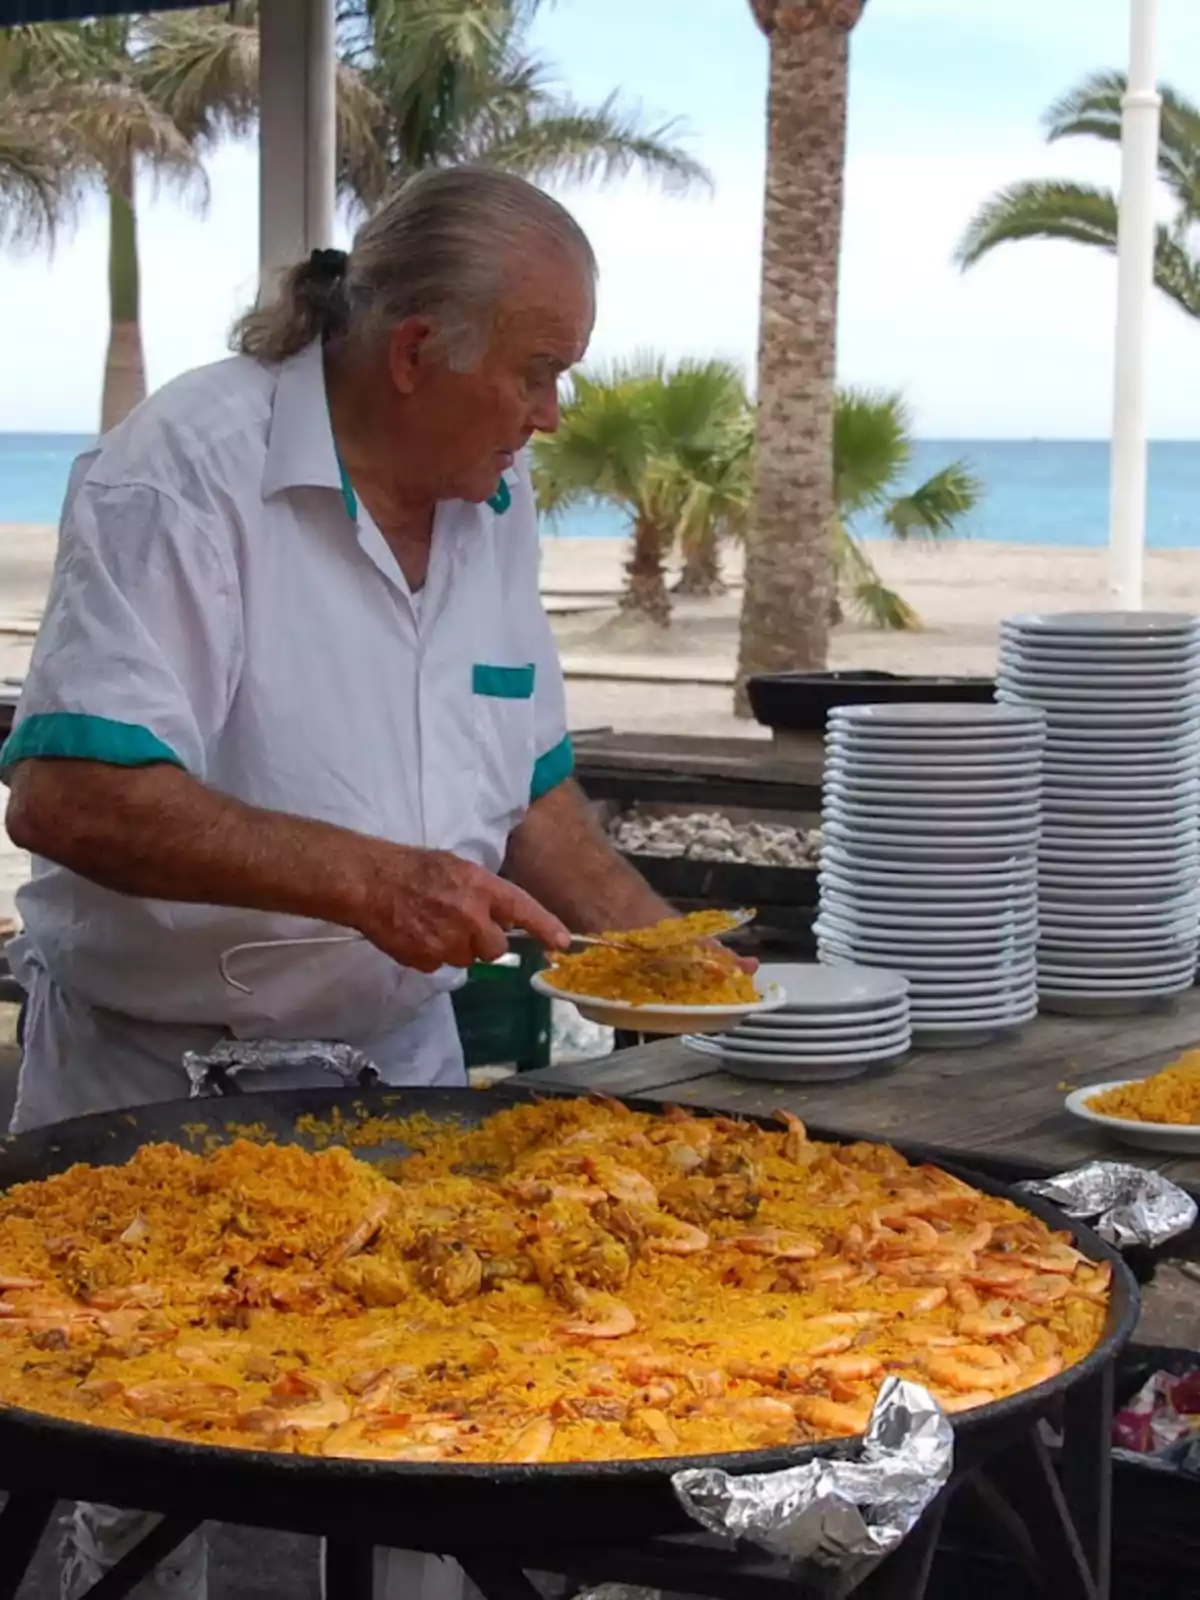 Un hombre sirviendo paella en un plato junto a una gran paellera en un entorno al aire libre con palmeras y el mar de fondo.